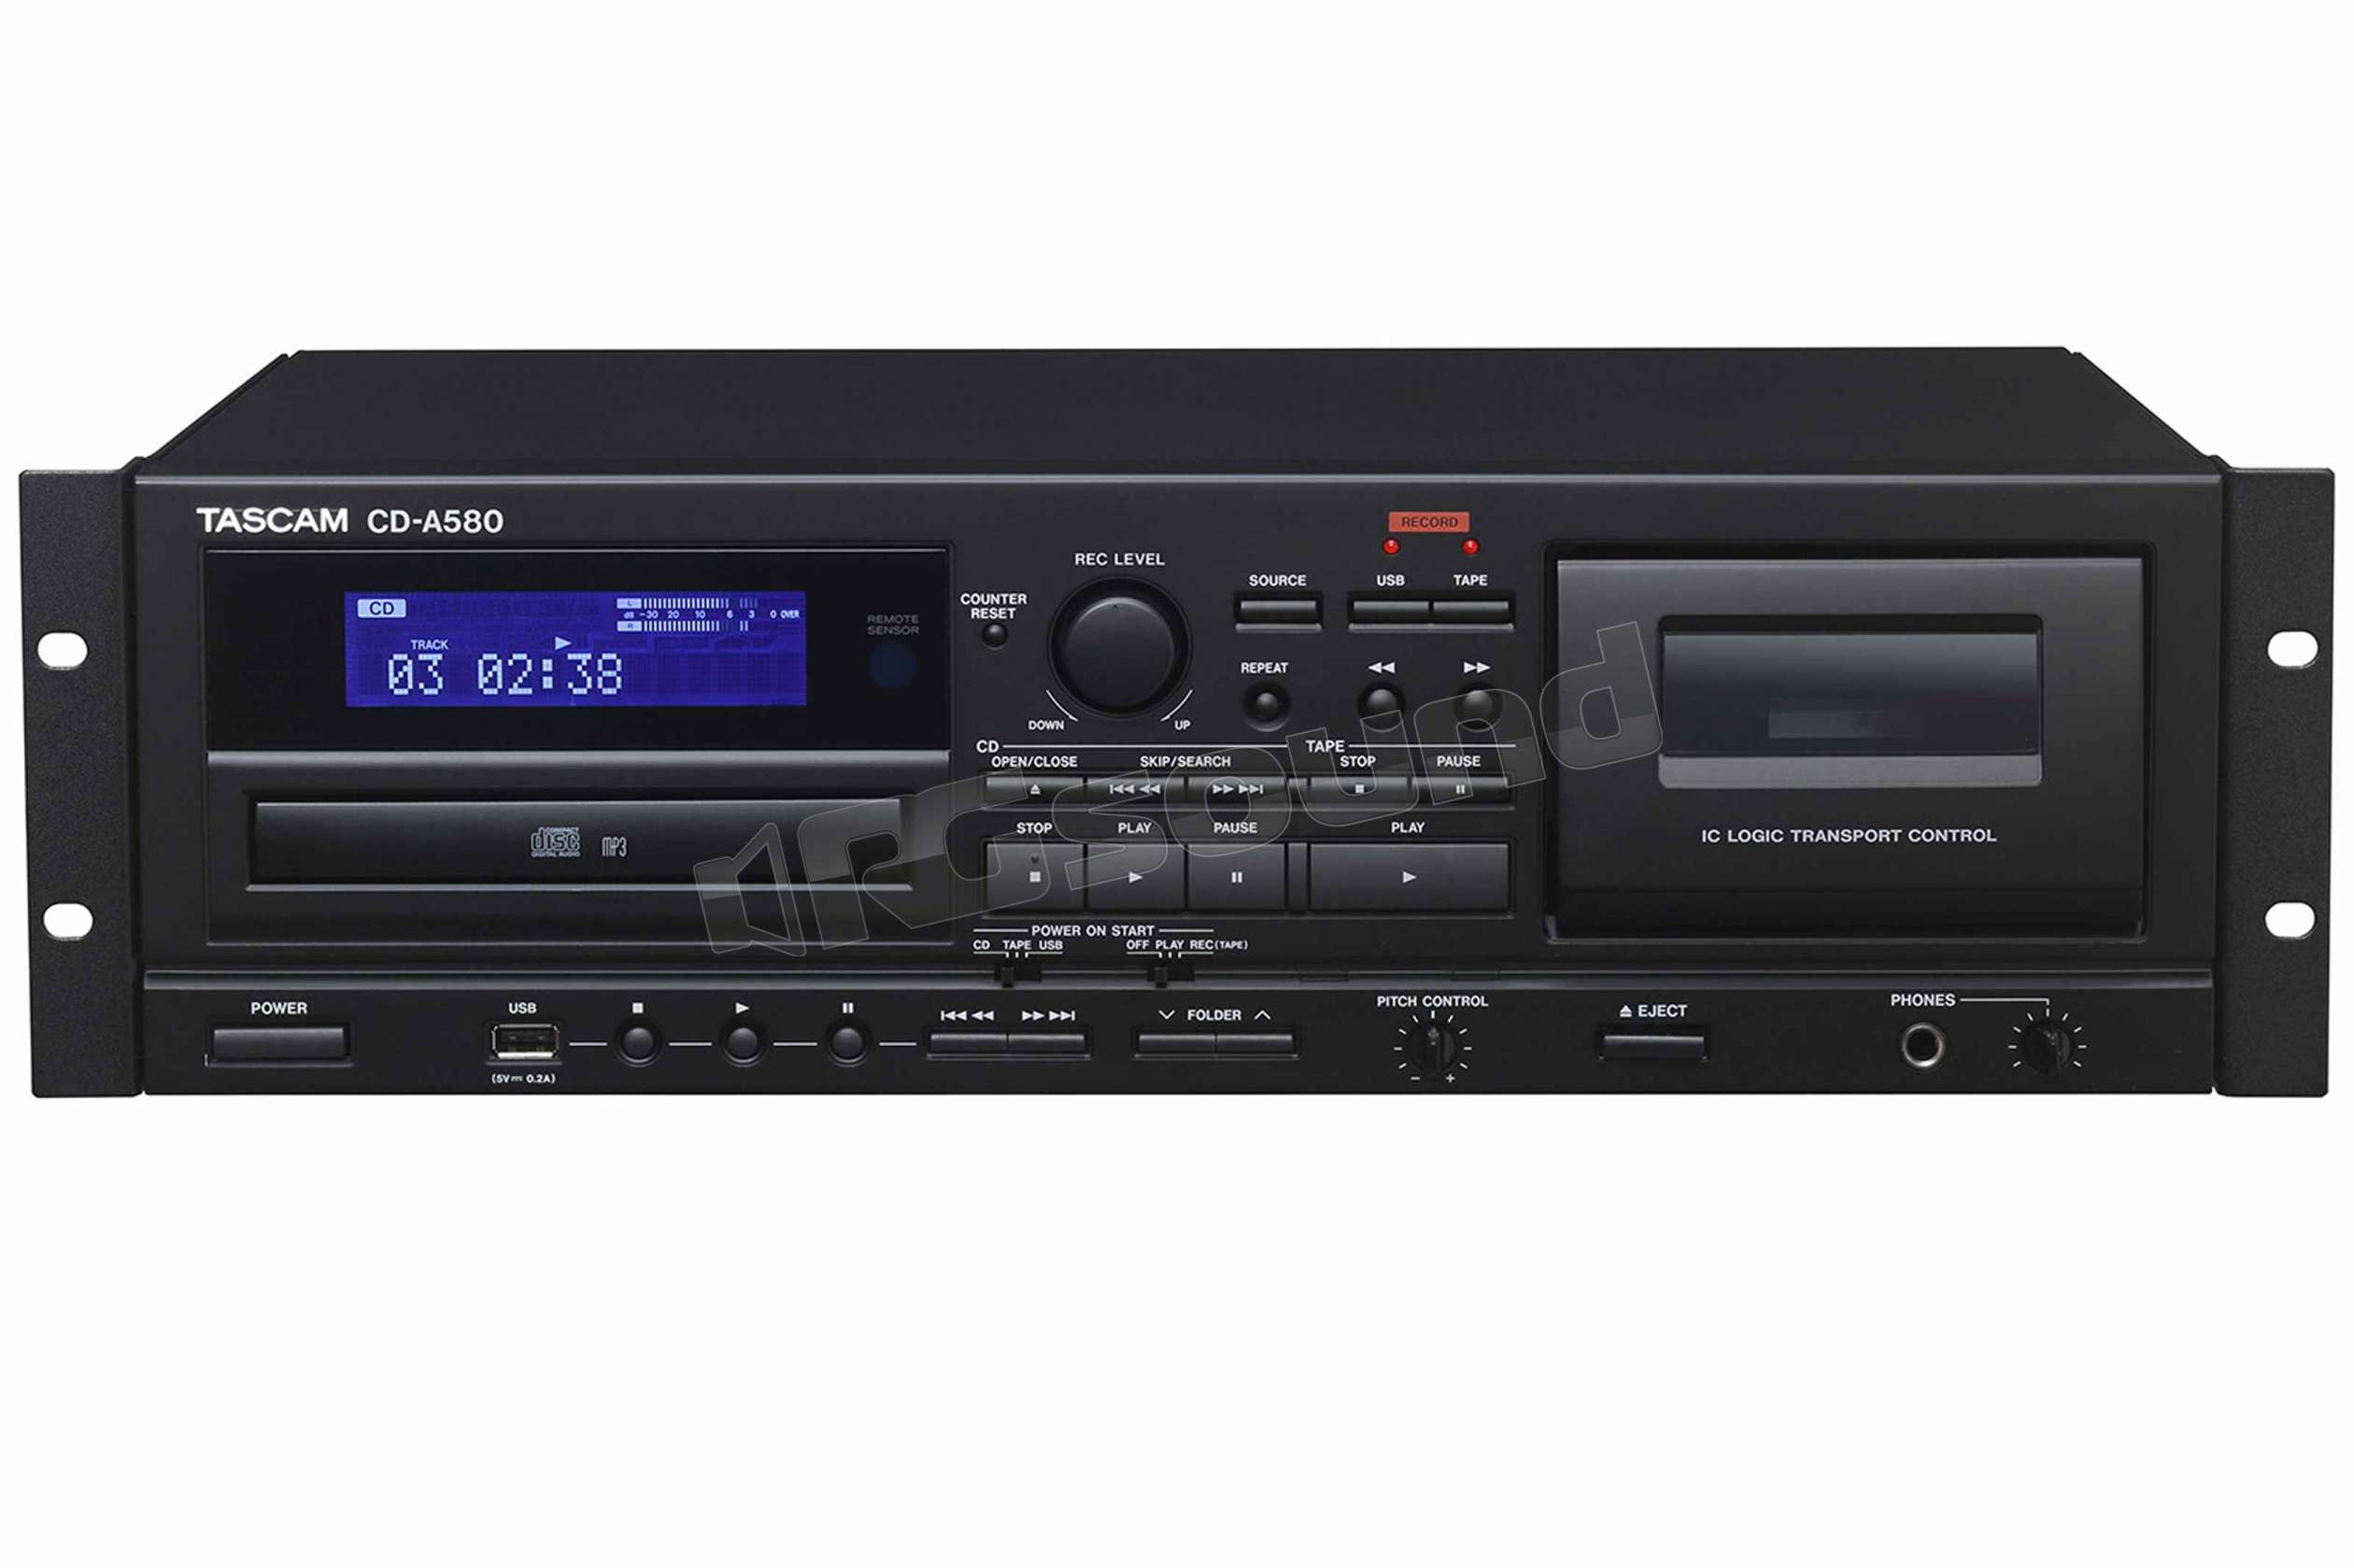 TASCAM CD-A580 lettore CD, cassette, USB e FLASH